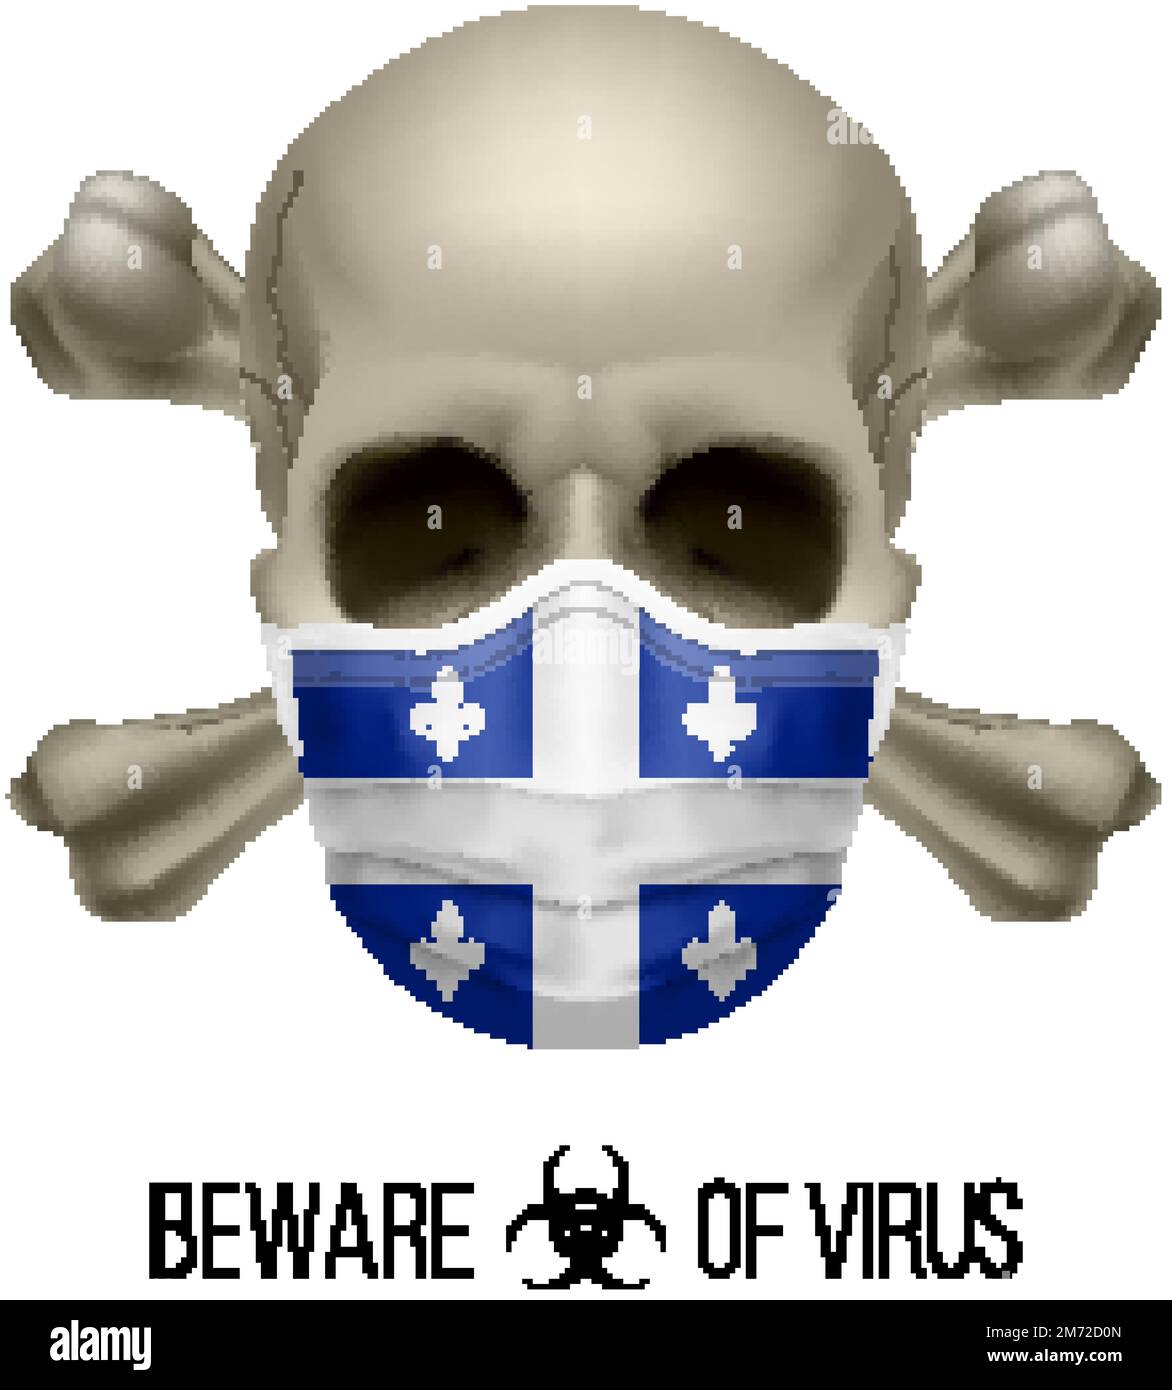 Cranio umano con ossa incrociate e maschera chirurgica nel colore della bandiera nazionale Quebec. Maschera in forma di bandiera e cranio come concetto di Dire avvertimento che Illustrazione Vettoriale